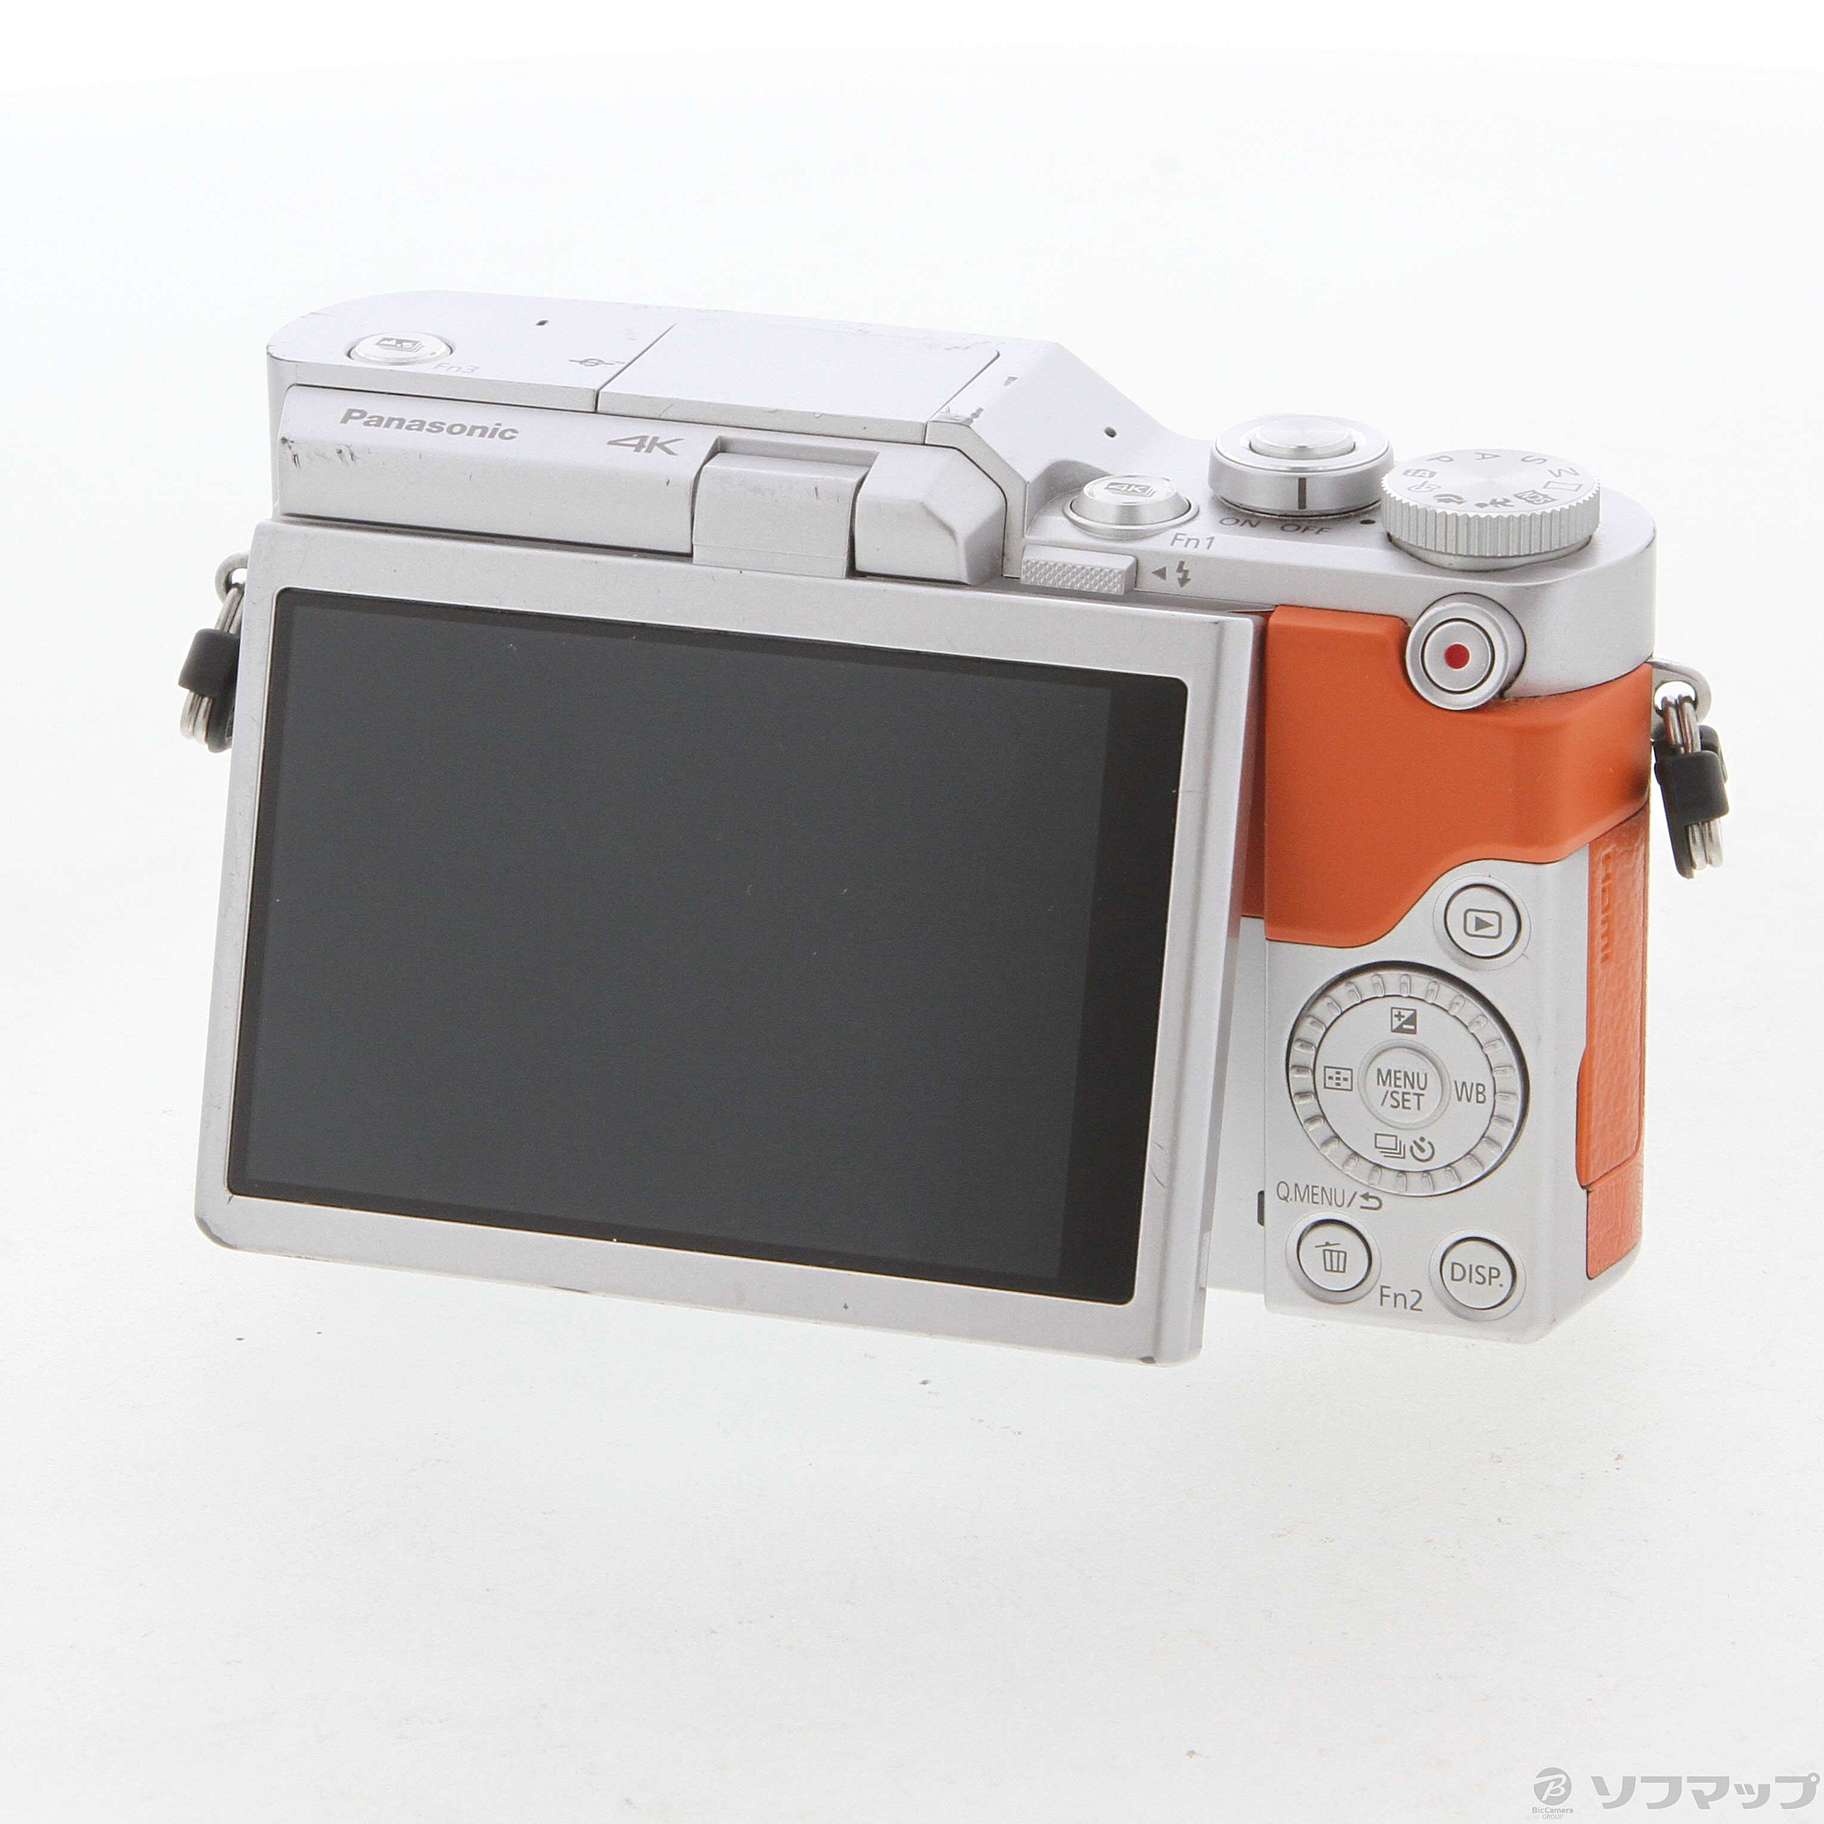 パナソニック Panasonic DC-GF9 ミラーレスカメラ オレンジ - カメラ